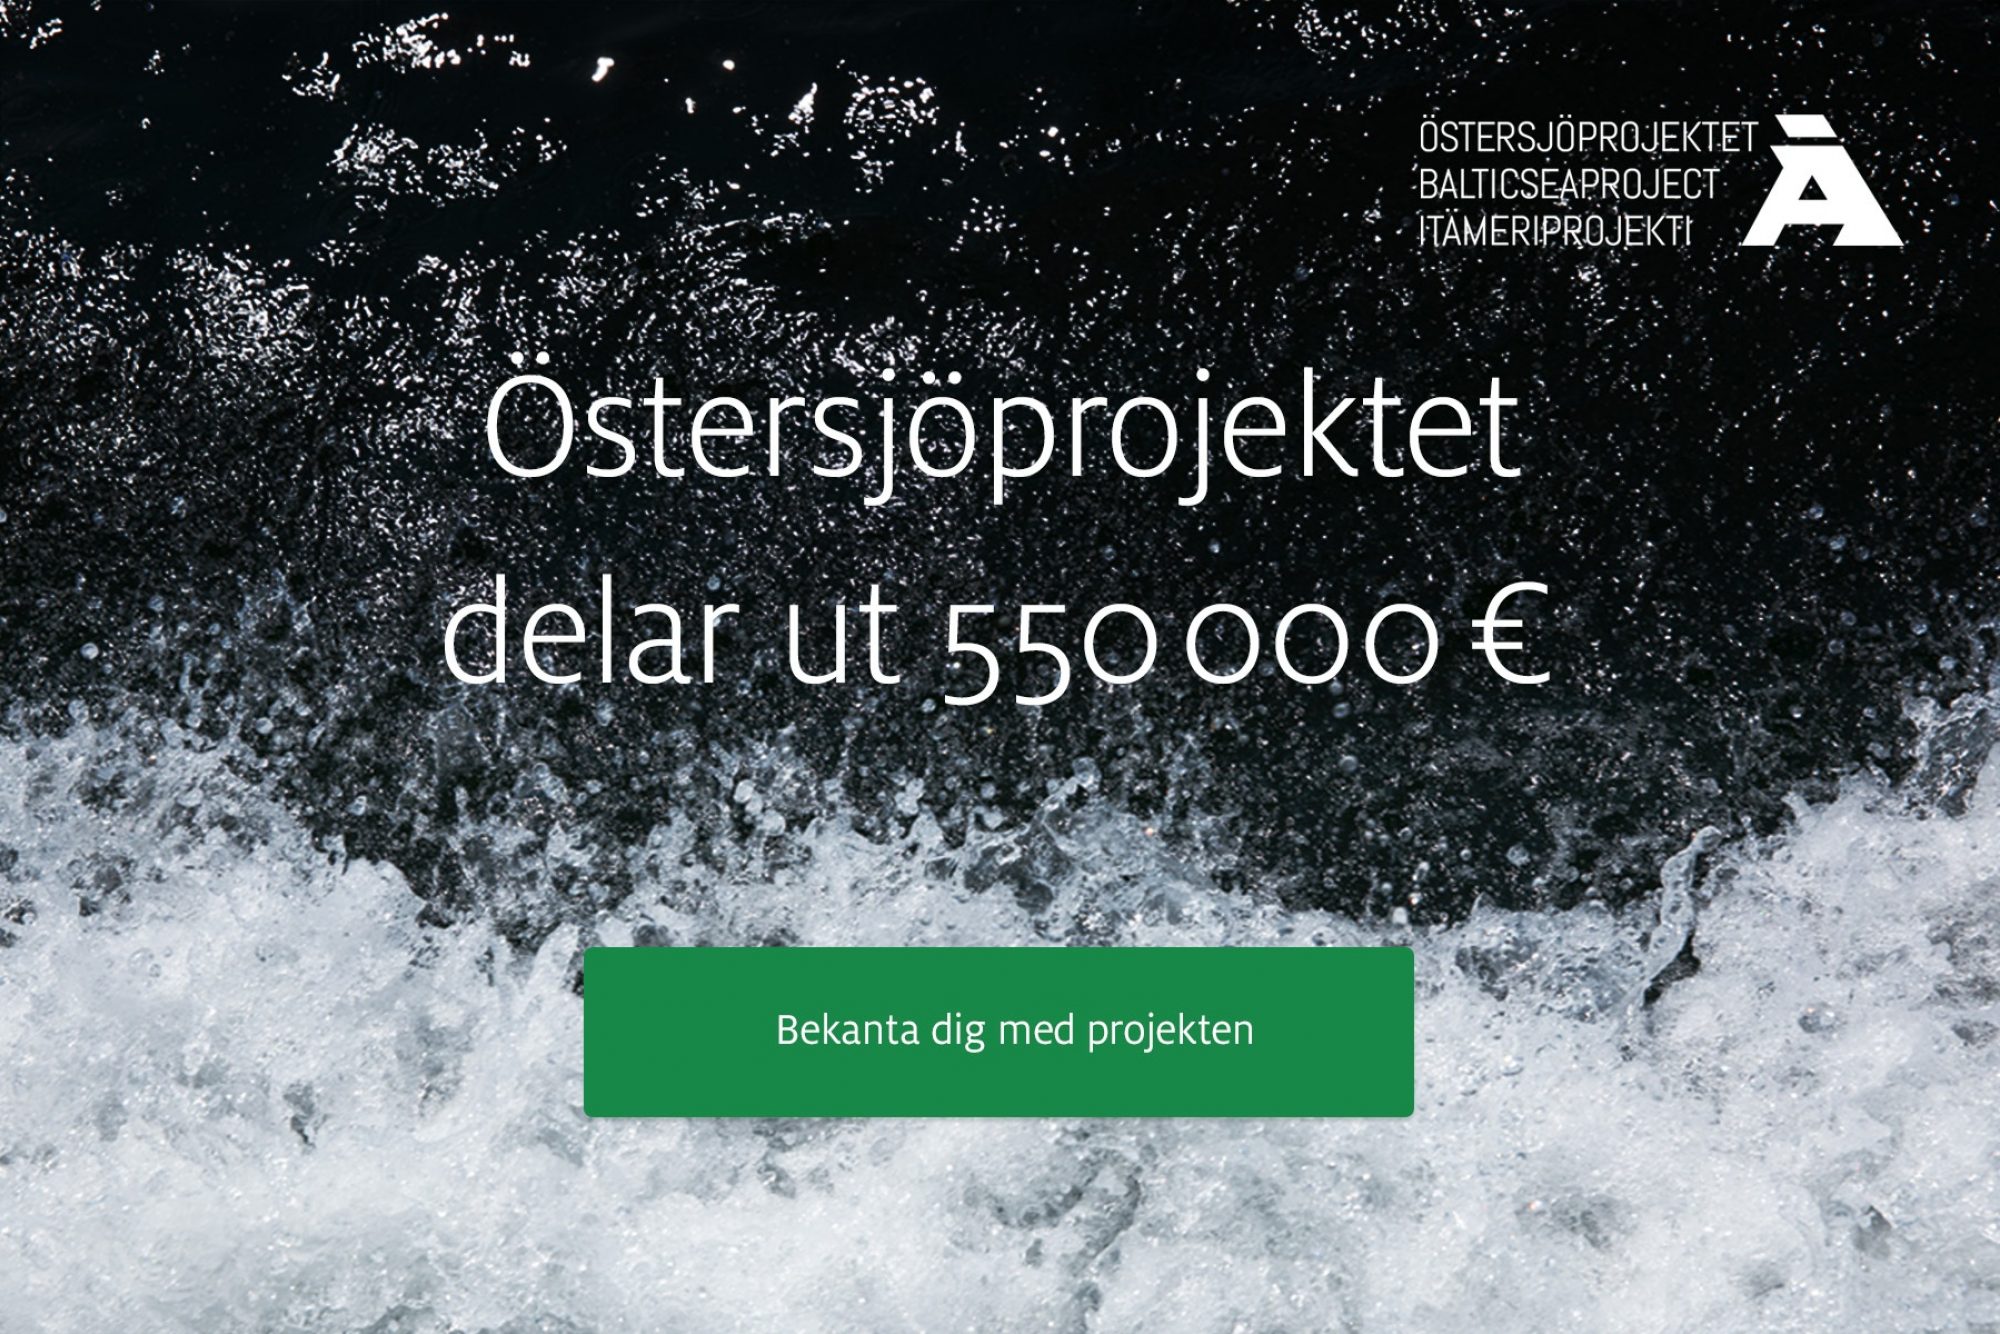 Ostersjoprojektet delar ut 550000 euro svenska